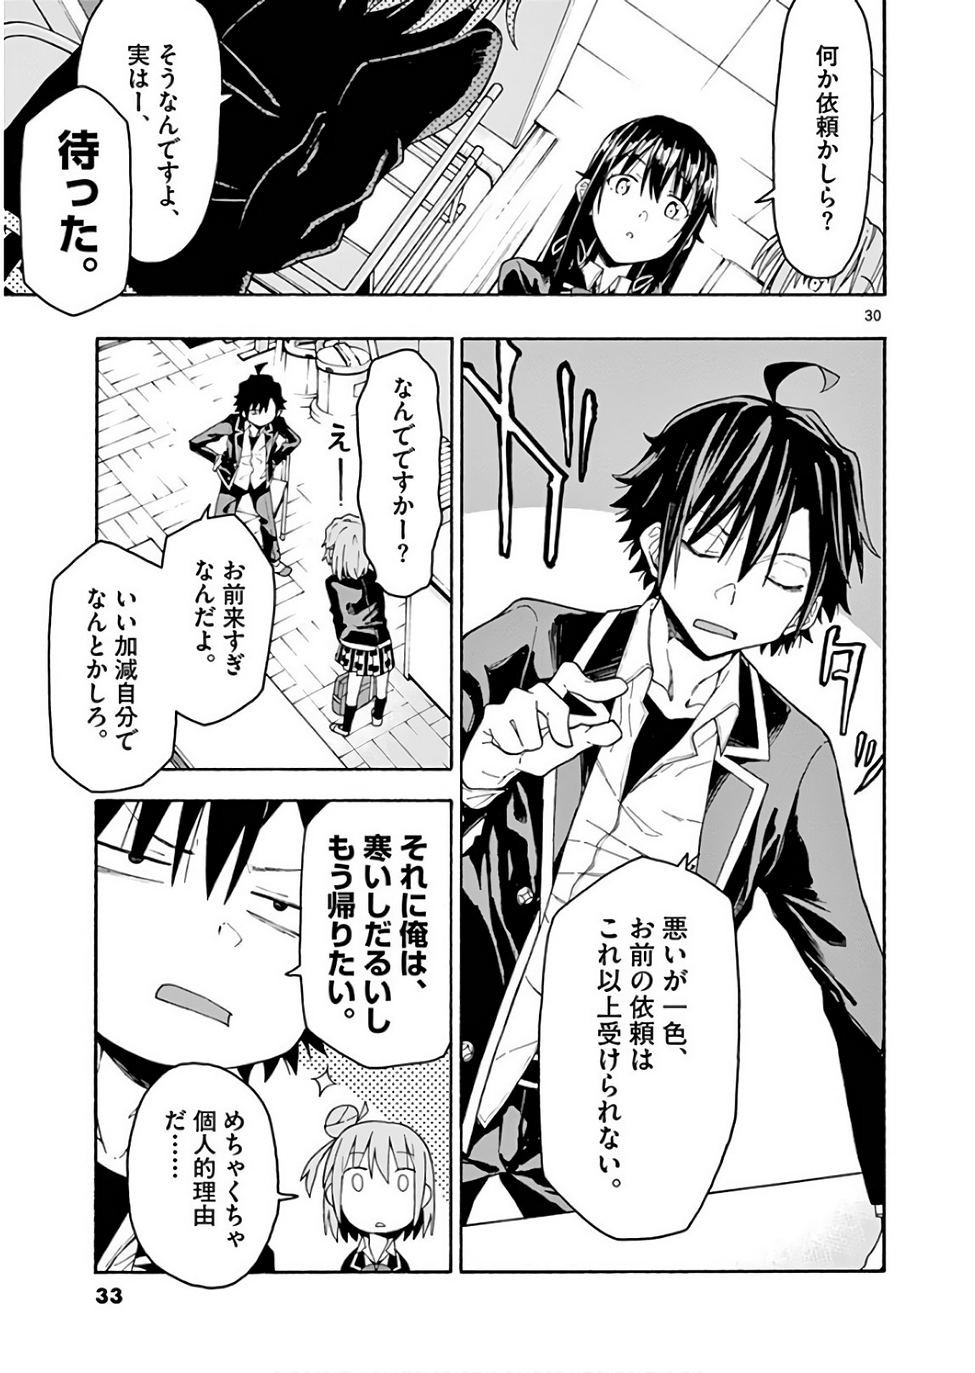 Yahari Ore no Seishun Rabukome wa Machigatte Iru. @ Comic - Chapter 71 - Page 33